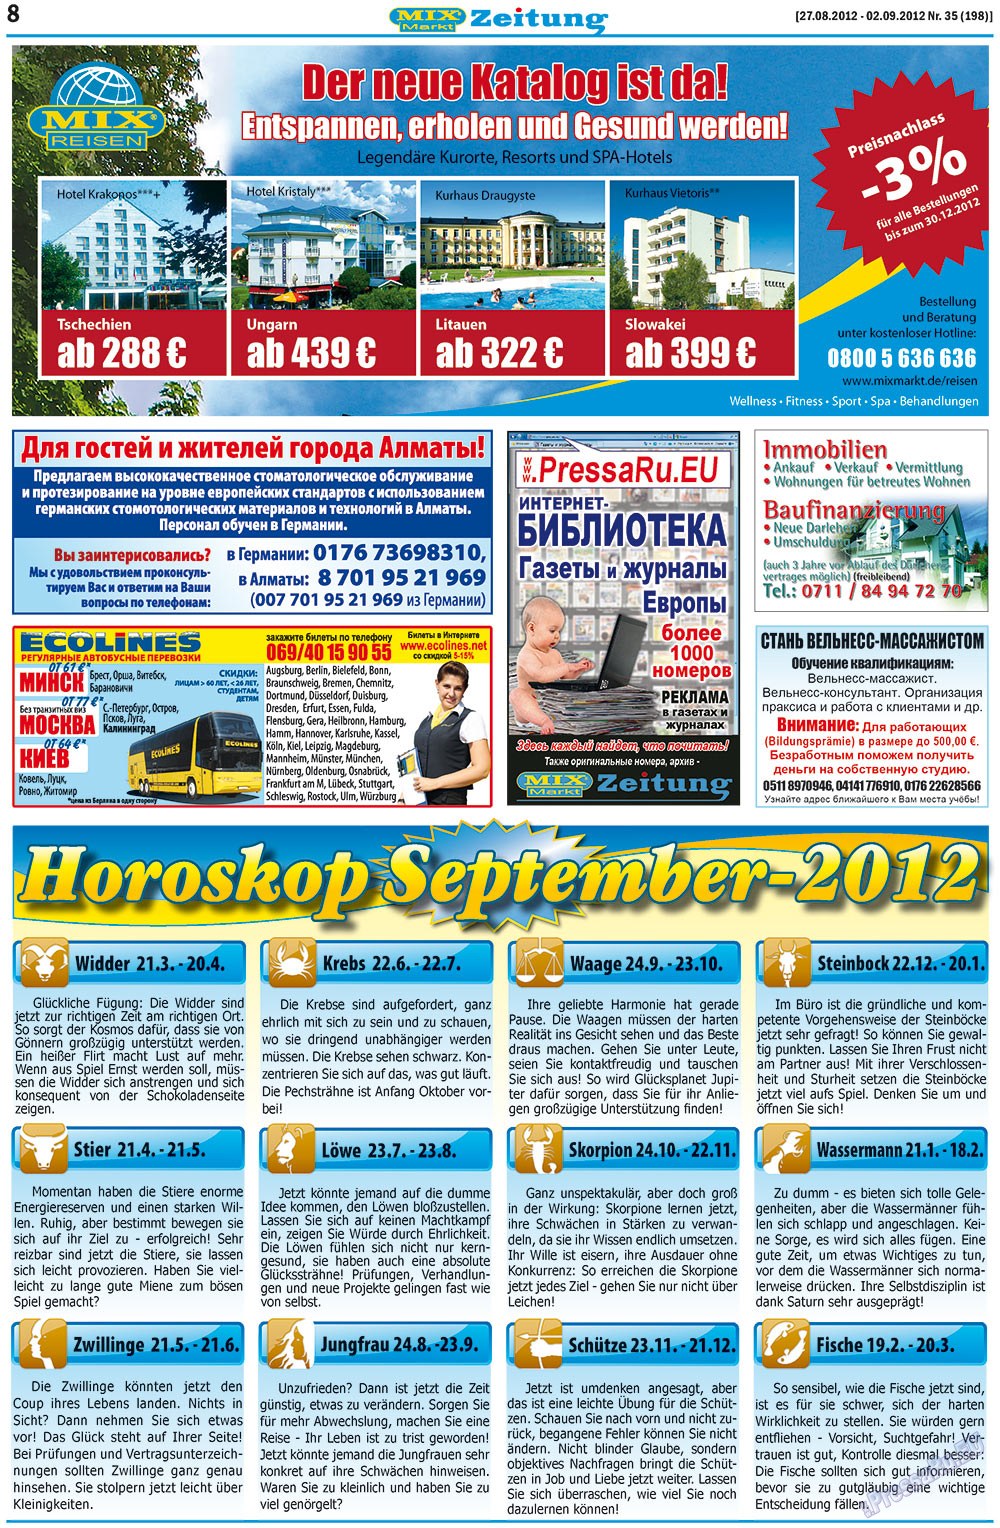 MIX-Markt Zeitung (газета). 2012 год, номер 35, стр. 8